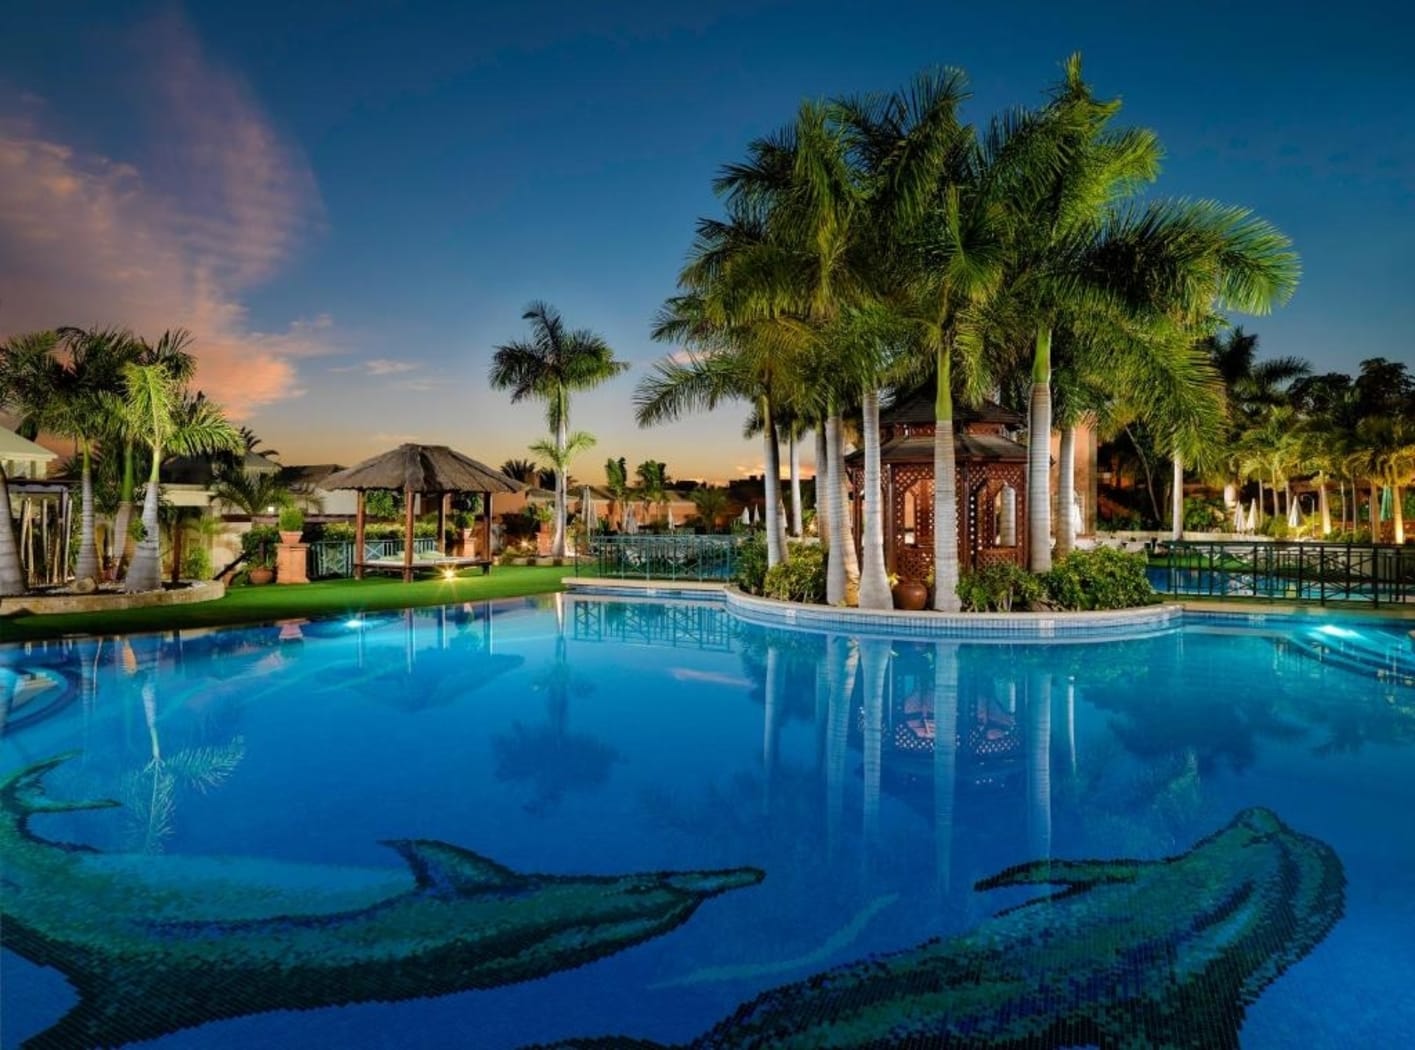 Green Garden Eco Resort & Villas, mejores hoteles en Las Américas para ir con niños